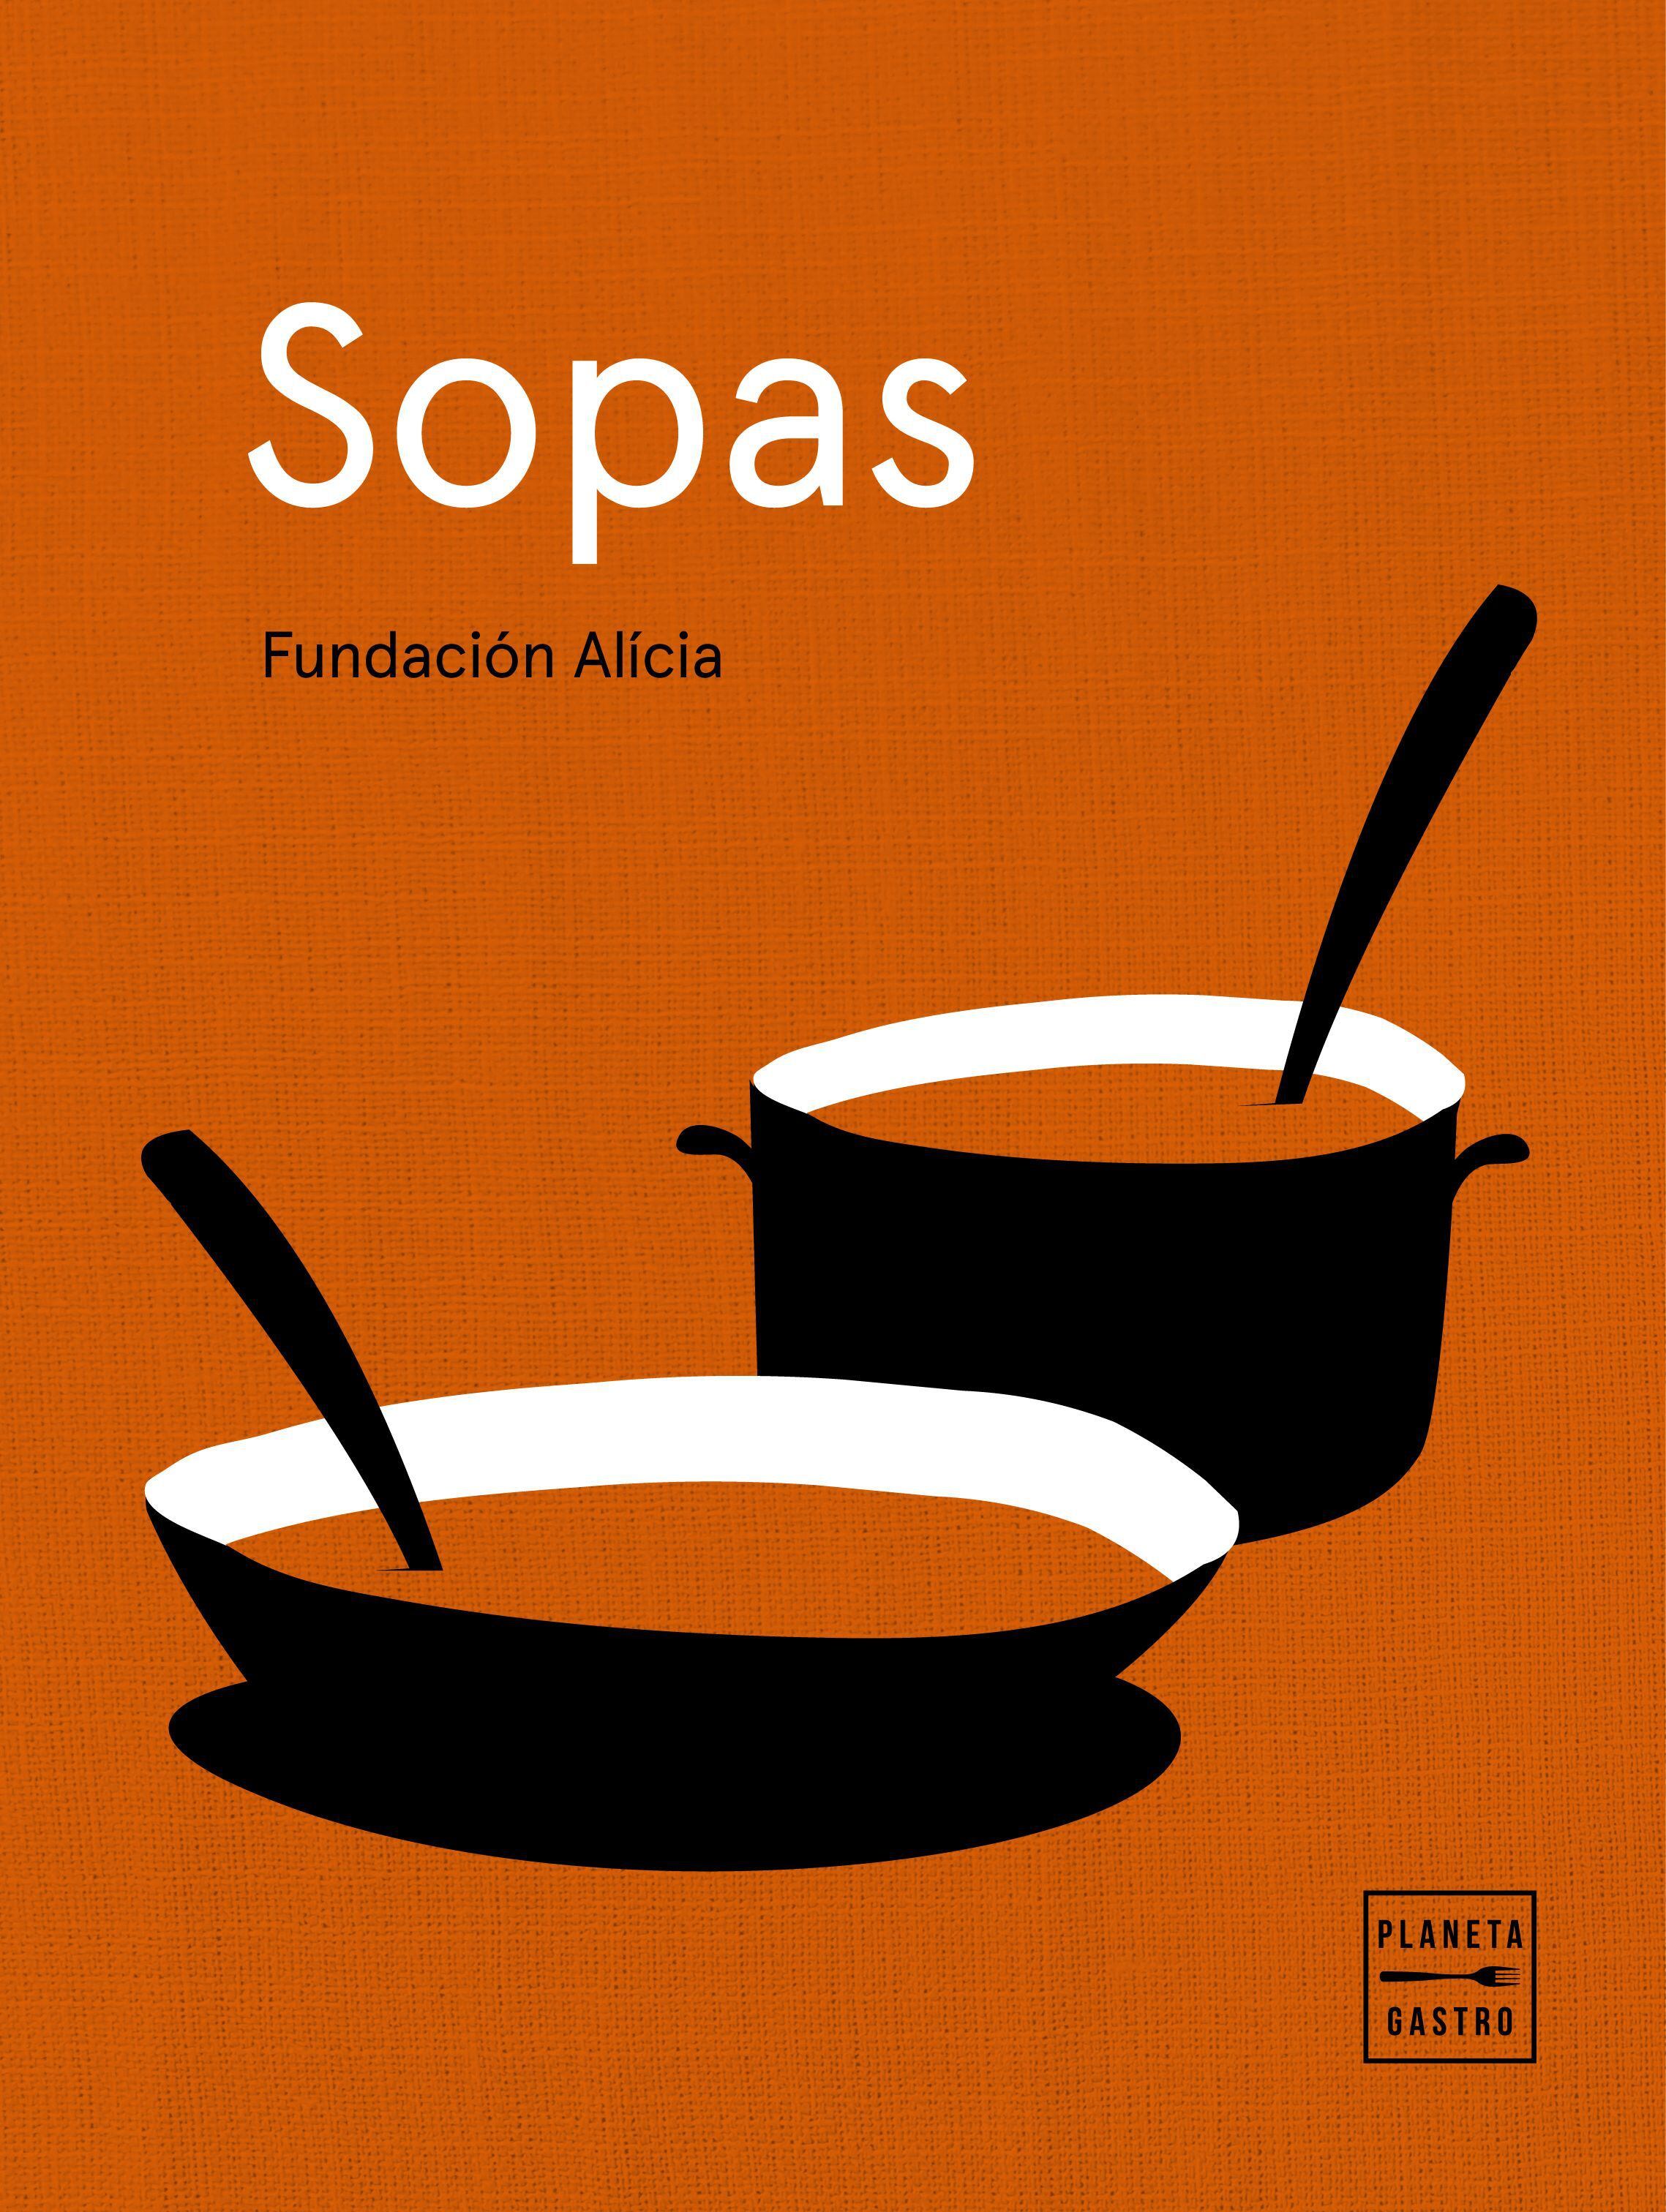 Portada de 'Sopas', de la Fundación Alicia (Editorial Planeta Gastro).